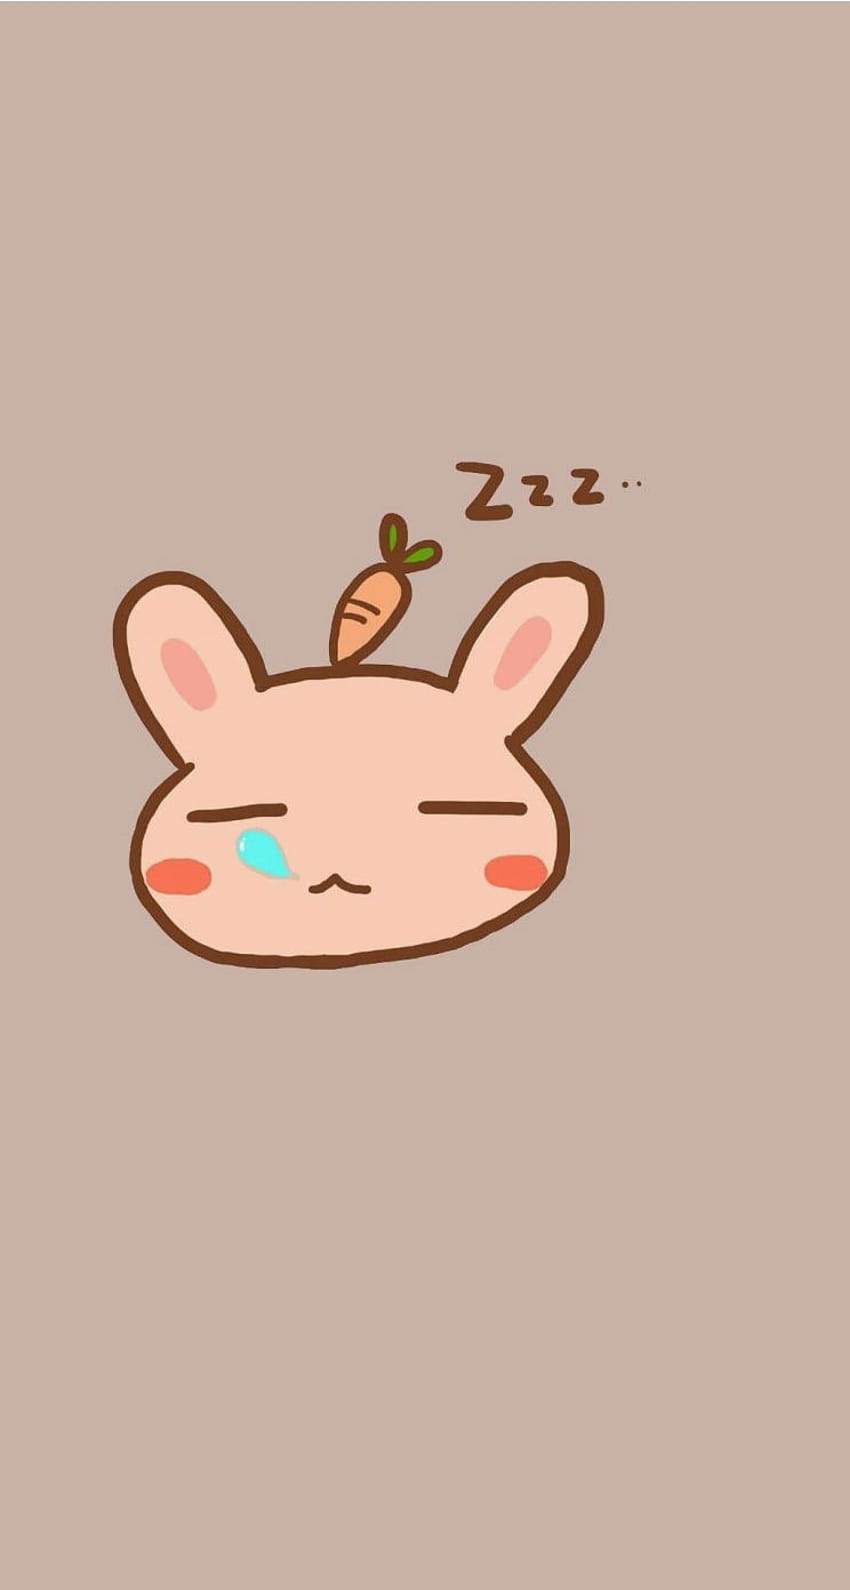 Sleeping bunny. Tap to see 8 Cartoon Sleepy Animals Zzz, sleepy cute animals HD phone wallpaper